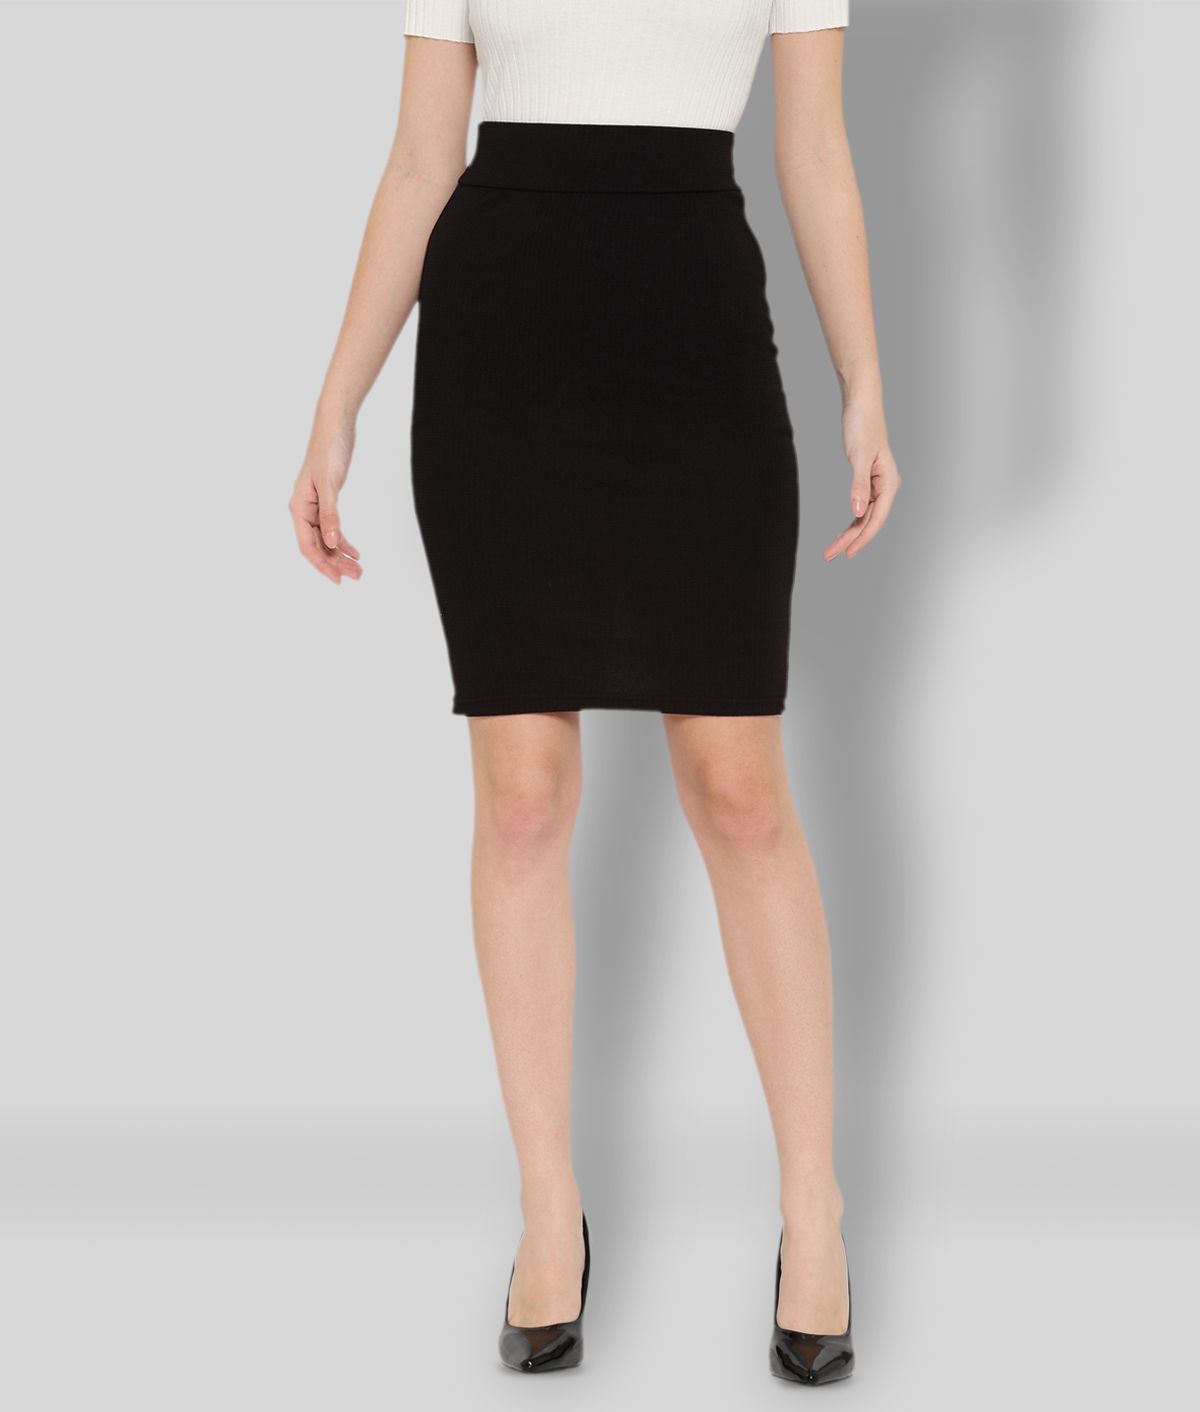 R L F - Black Cotton Blend Women's Straight Skirt ( Pack of 1 )